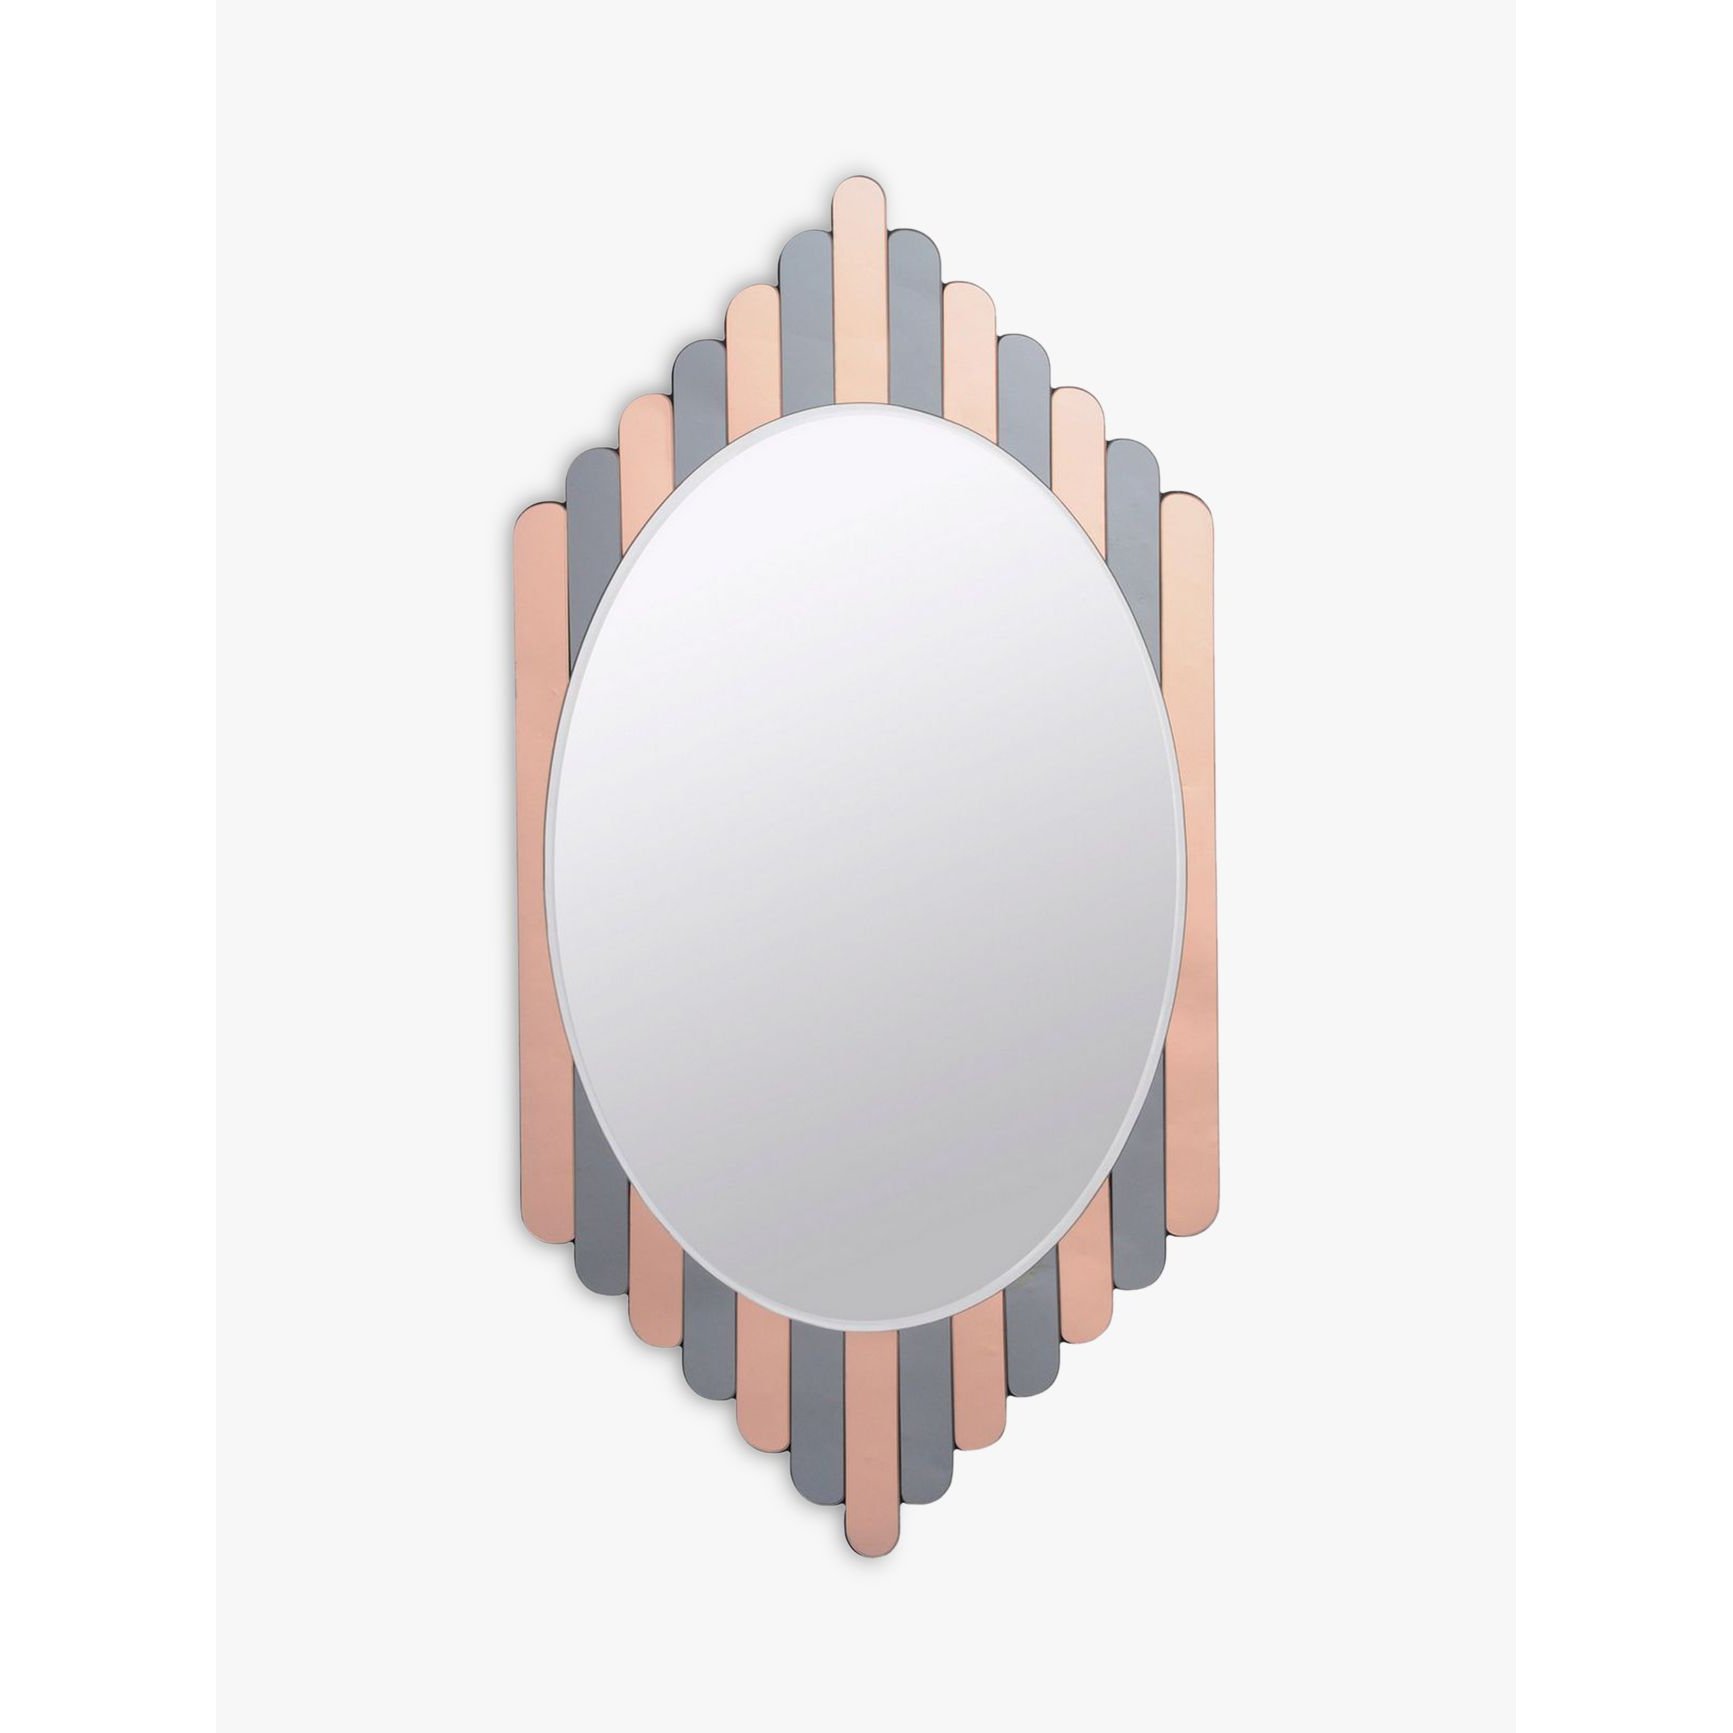 Libra Conti Oval Wall Mirror, 120 x 61cm, Grey/Copper